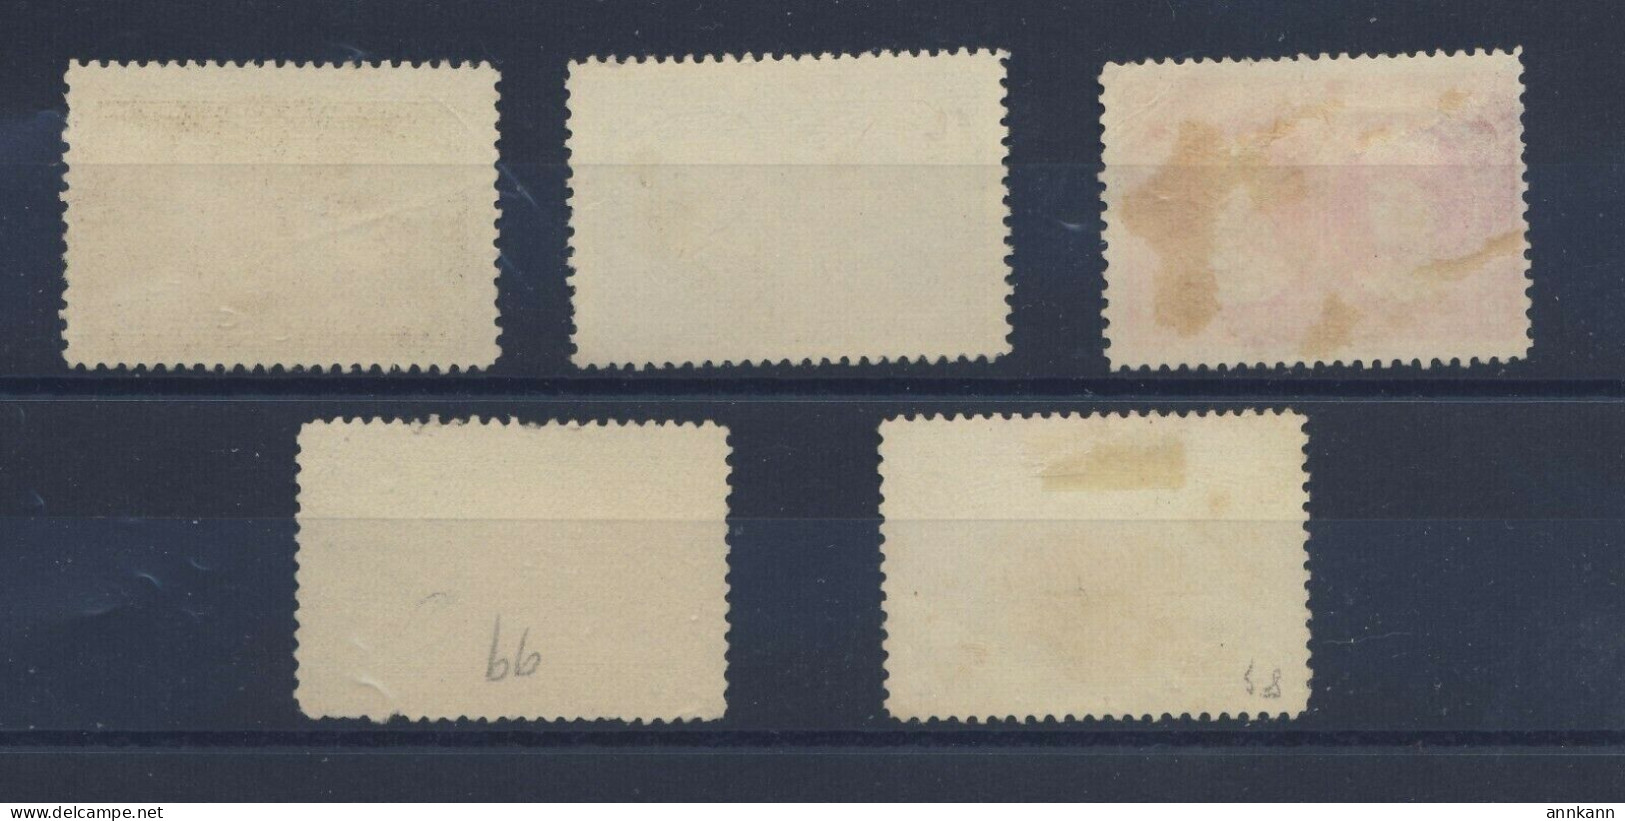 5x Canada 1908 Quebec Used Fine Stamps 1/2c 1c 2c 3c 5c 7c Guide Value = $95.00 - Oblitérés